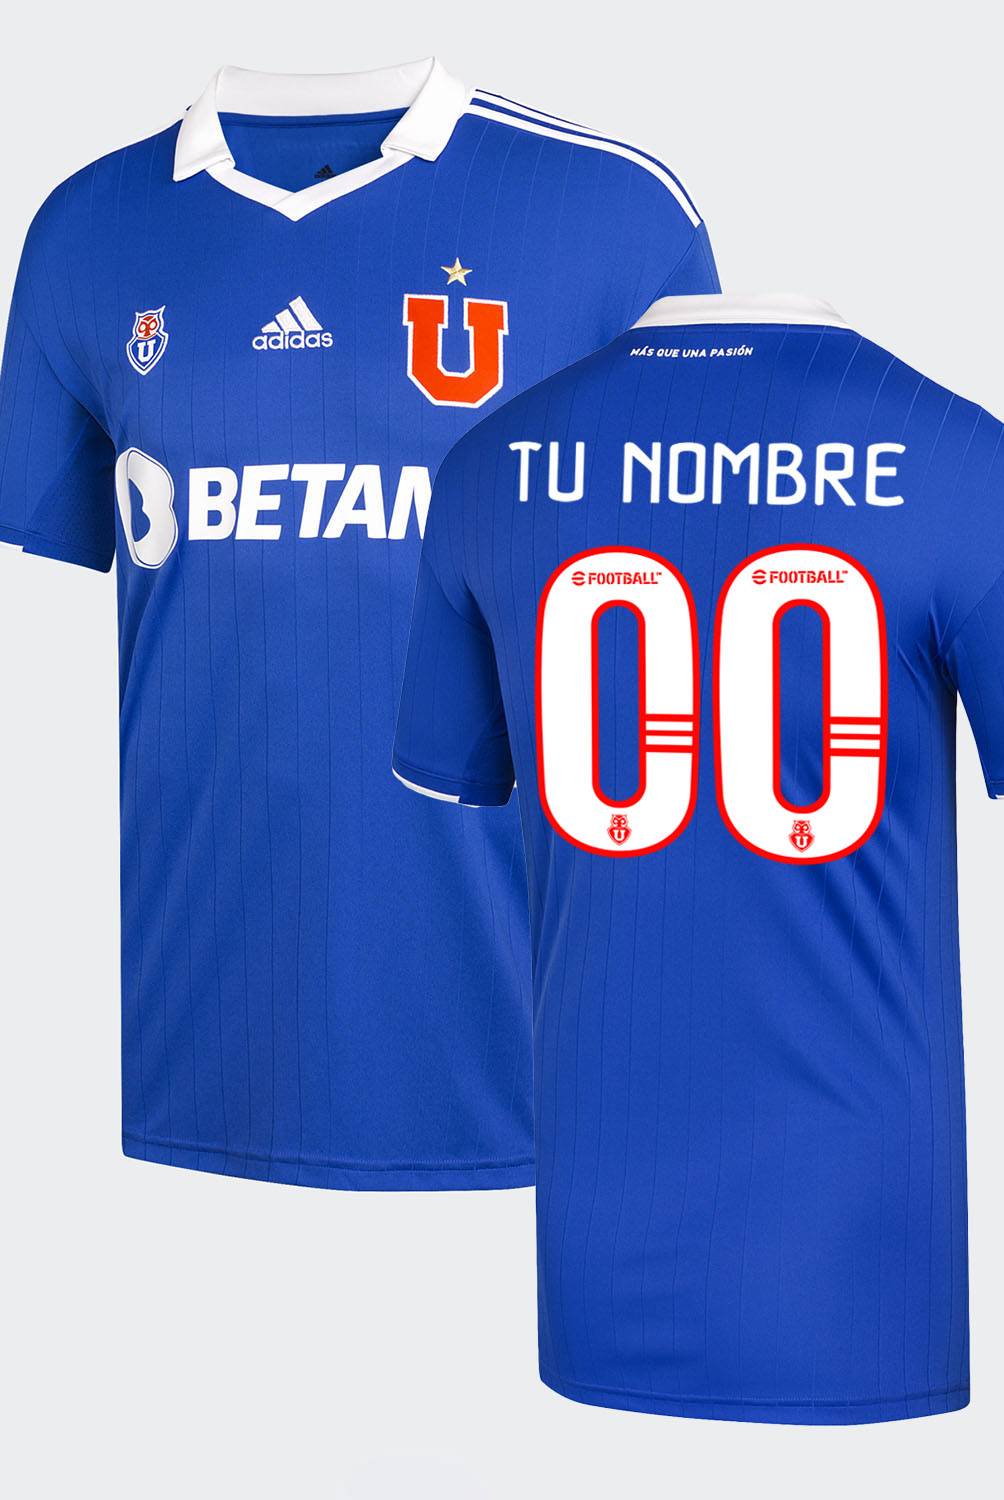 ADIDAS - Camiseta De Fútbol Personificable Universidad De Chile Local Hombre Adidas